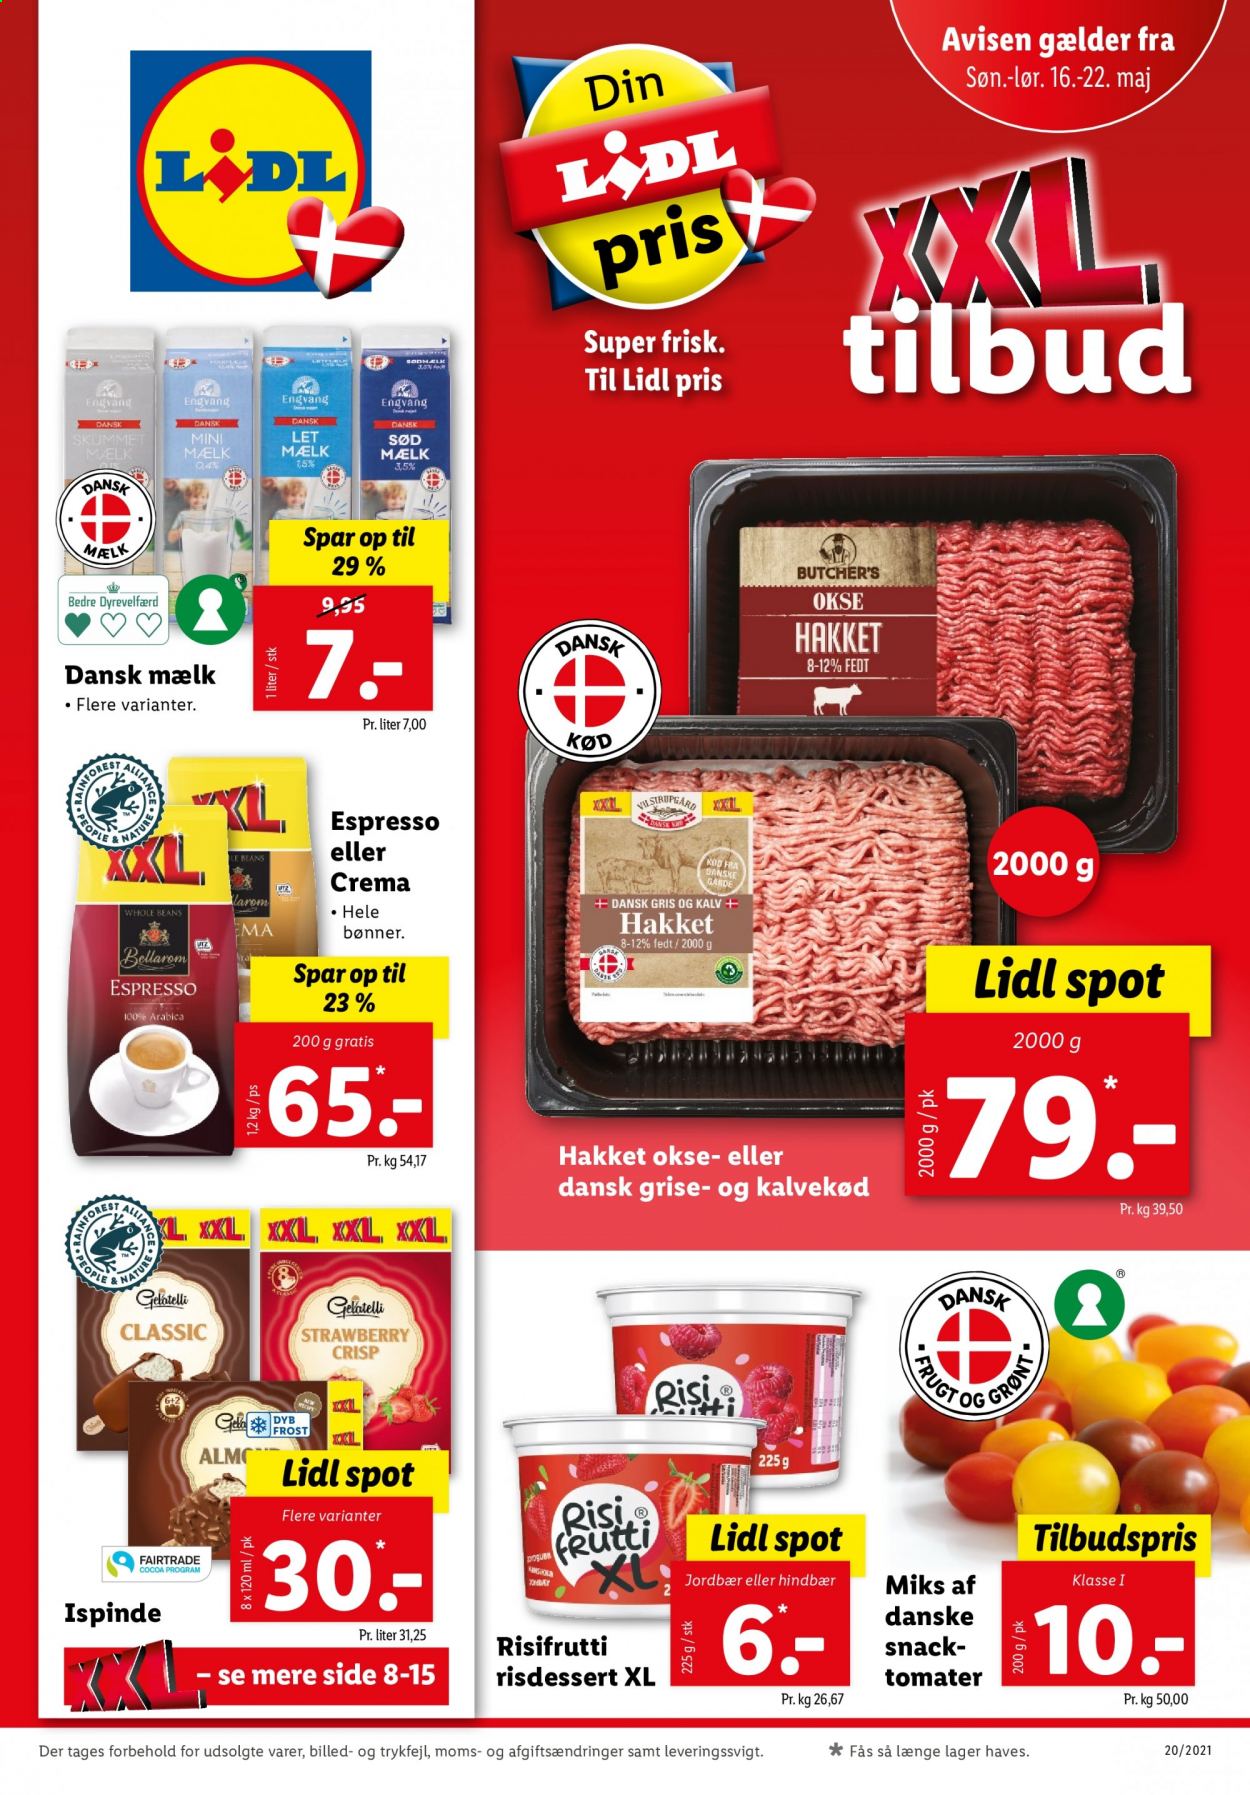 thumbnail - Lidl tilbud  - 16.5.2021 - 22.5.2021 - tilbudsprodukter - hindbær, jordbær, tomat, kalvekød, mælk, bønner, espresso. Side 1.